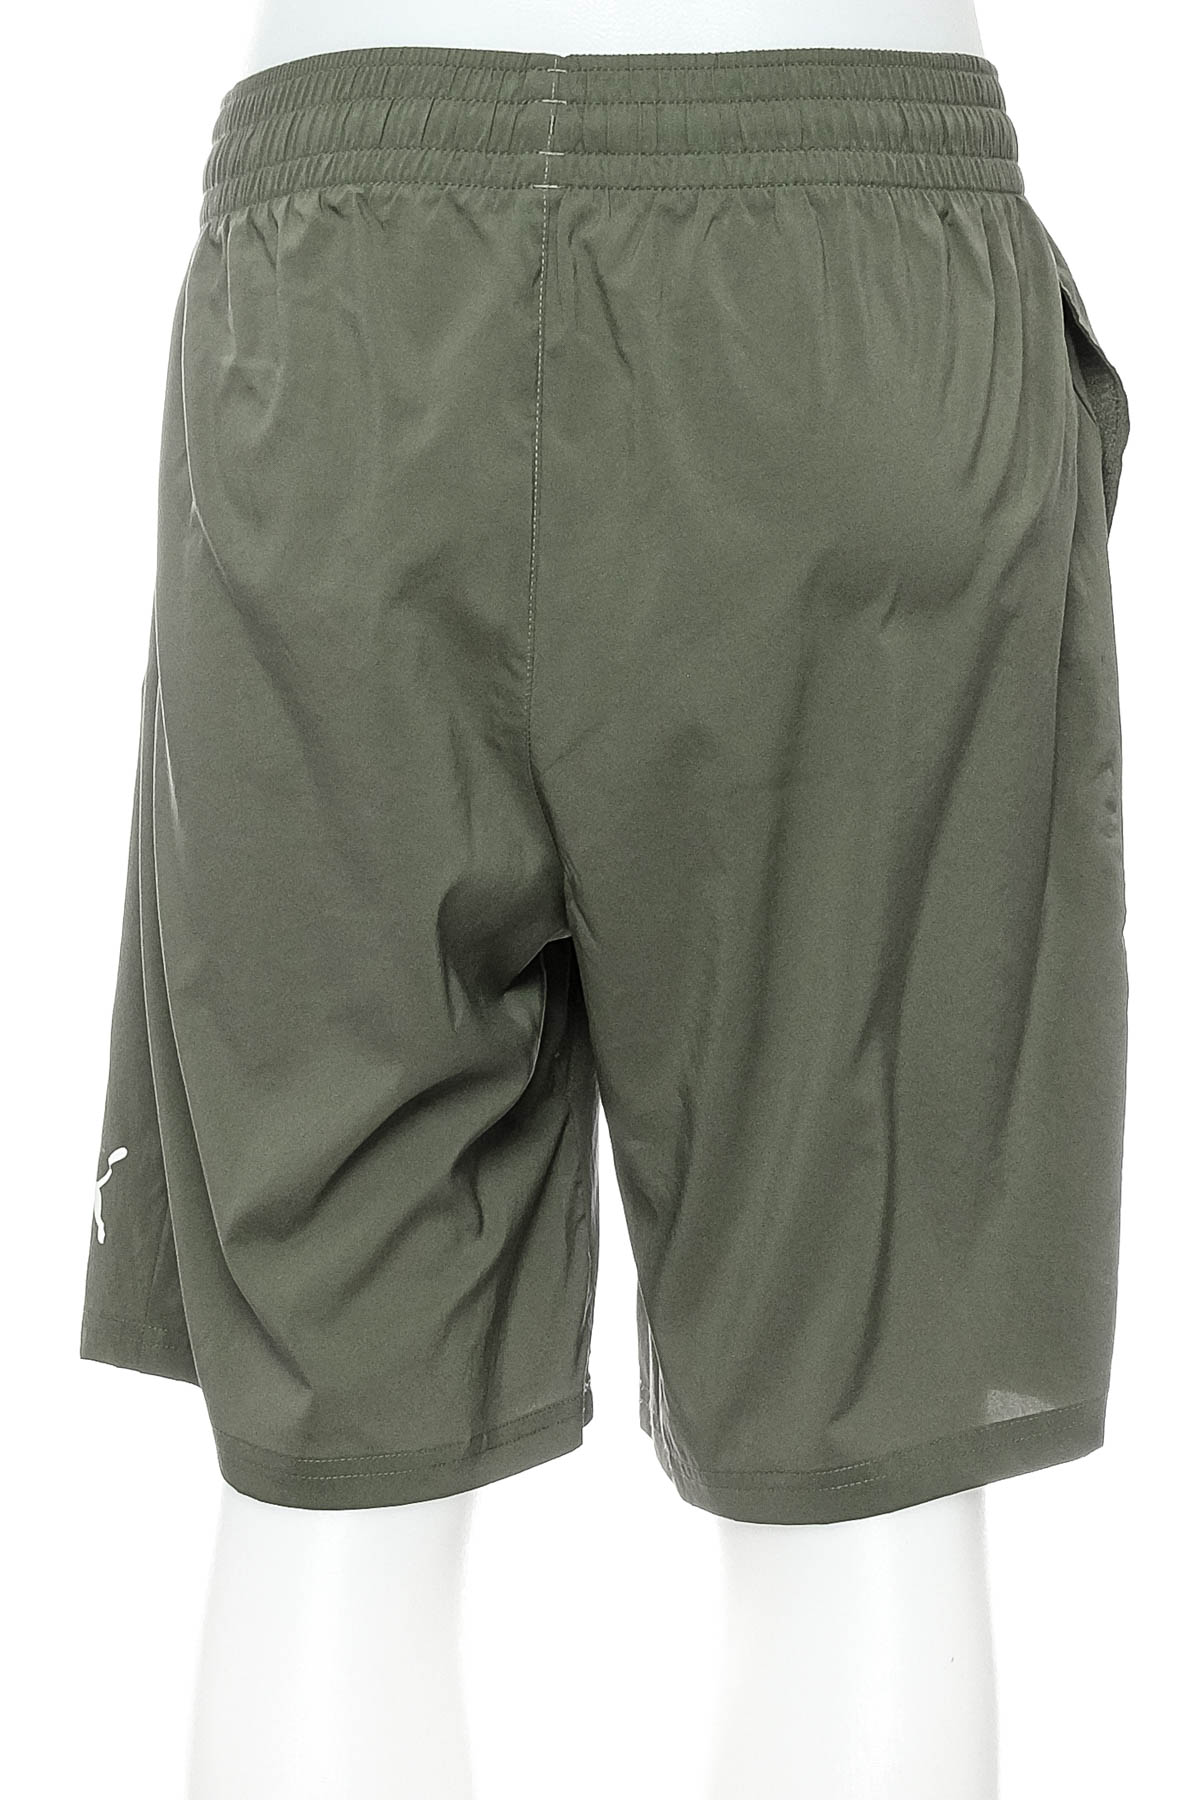 Men's shorts - Puma - 1